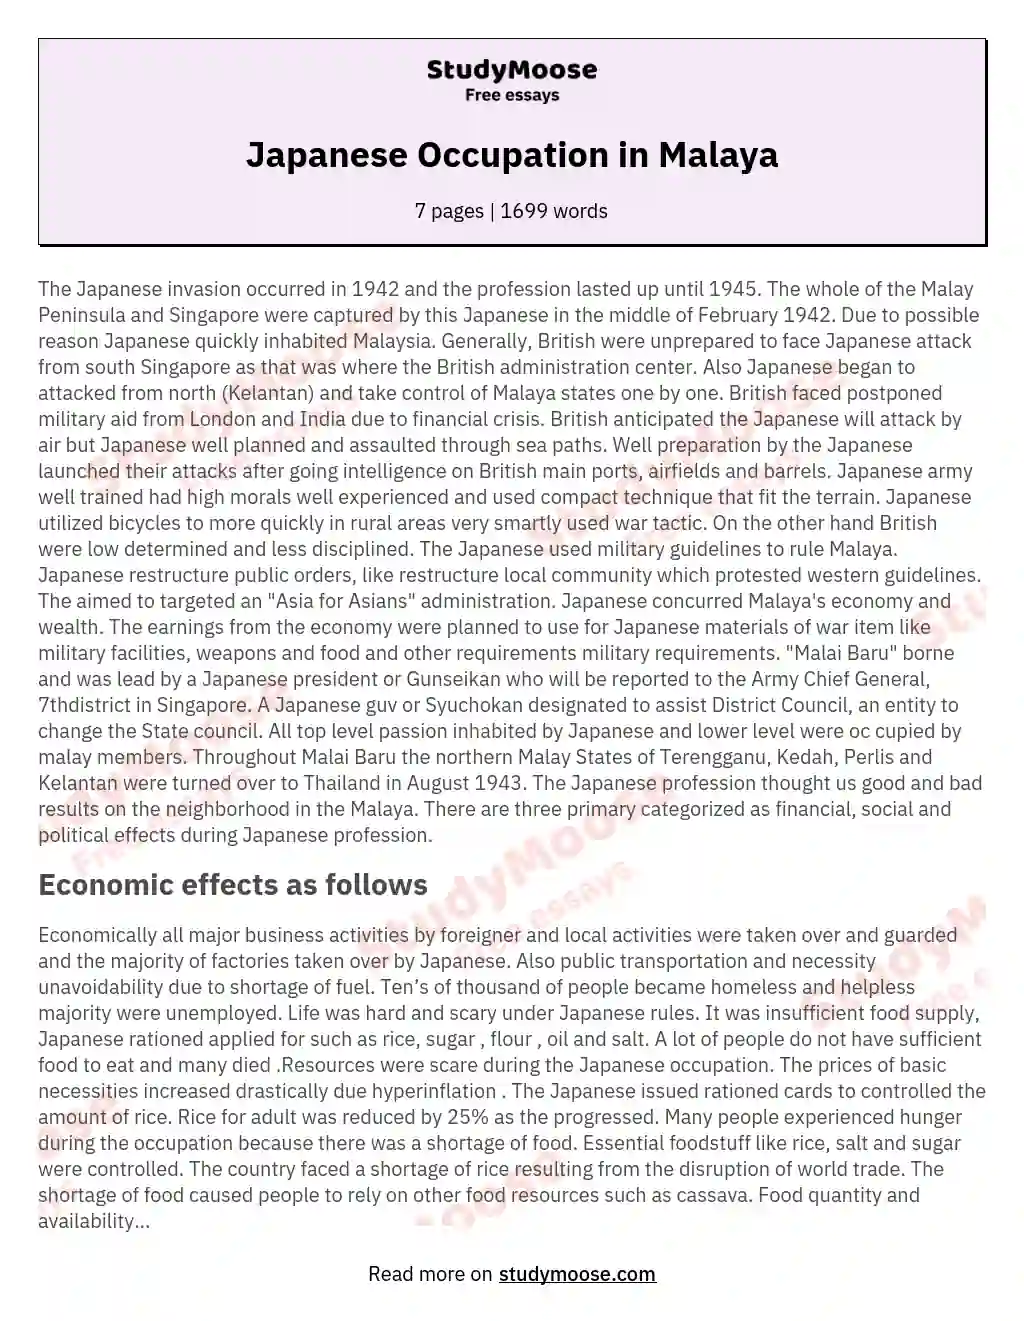 Japanese Occupation in Malaya essay